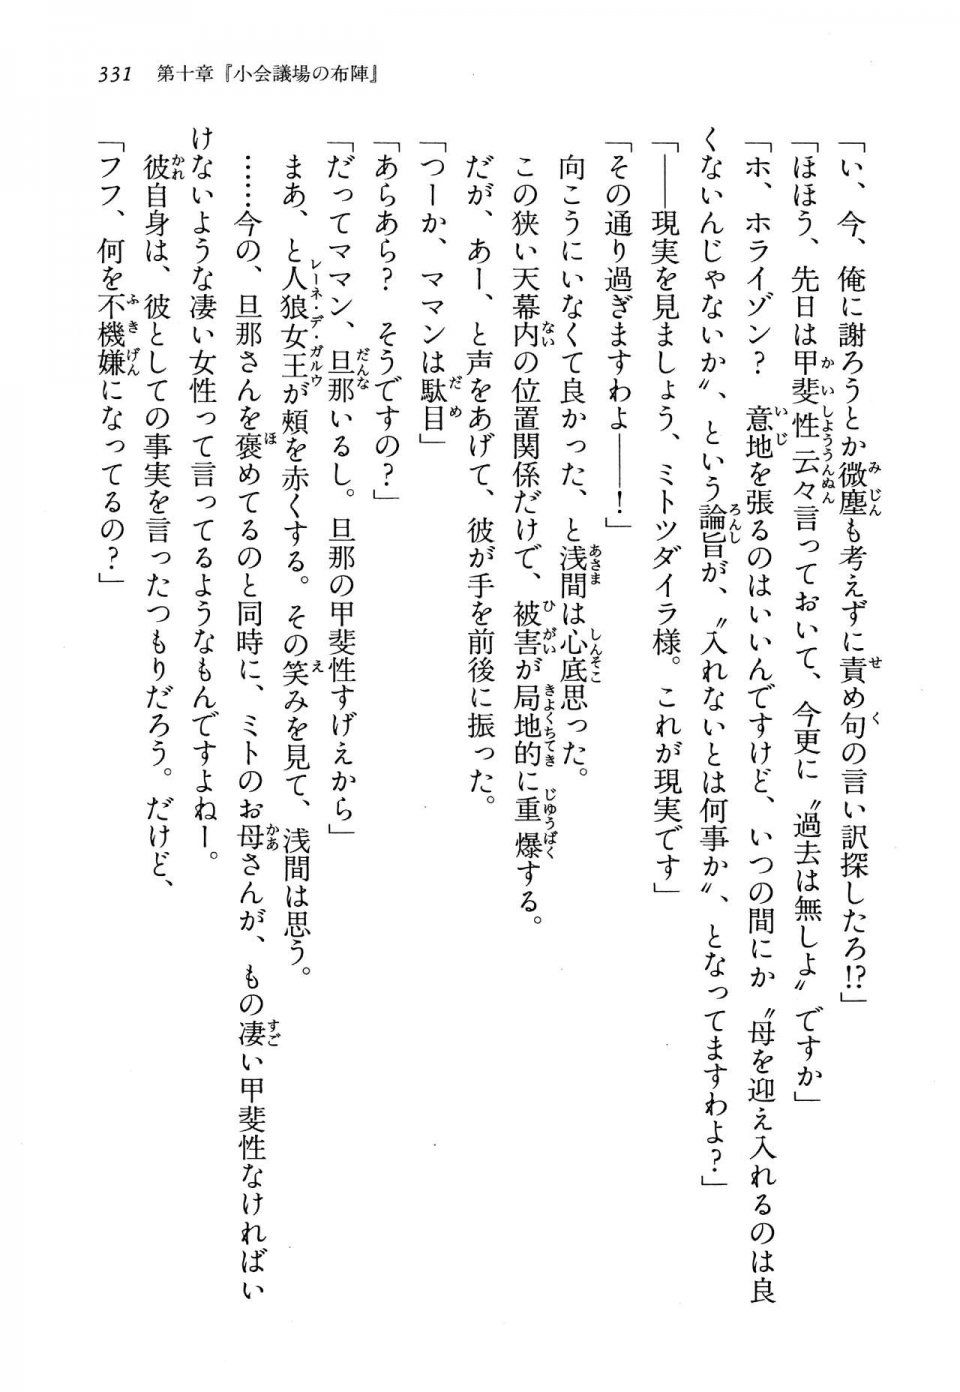 Kyoukai Senjou no Horizon LN Vol 13(6A) - Photo #331